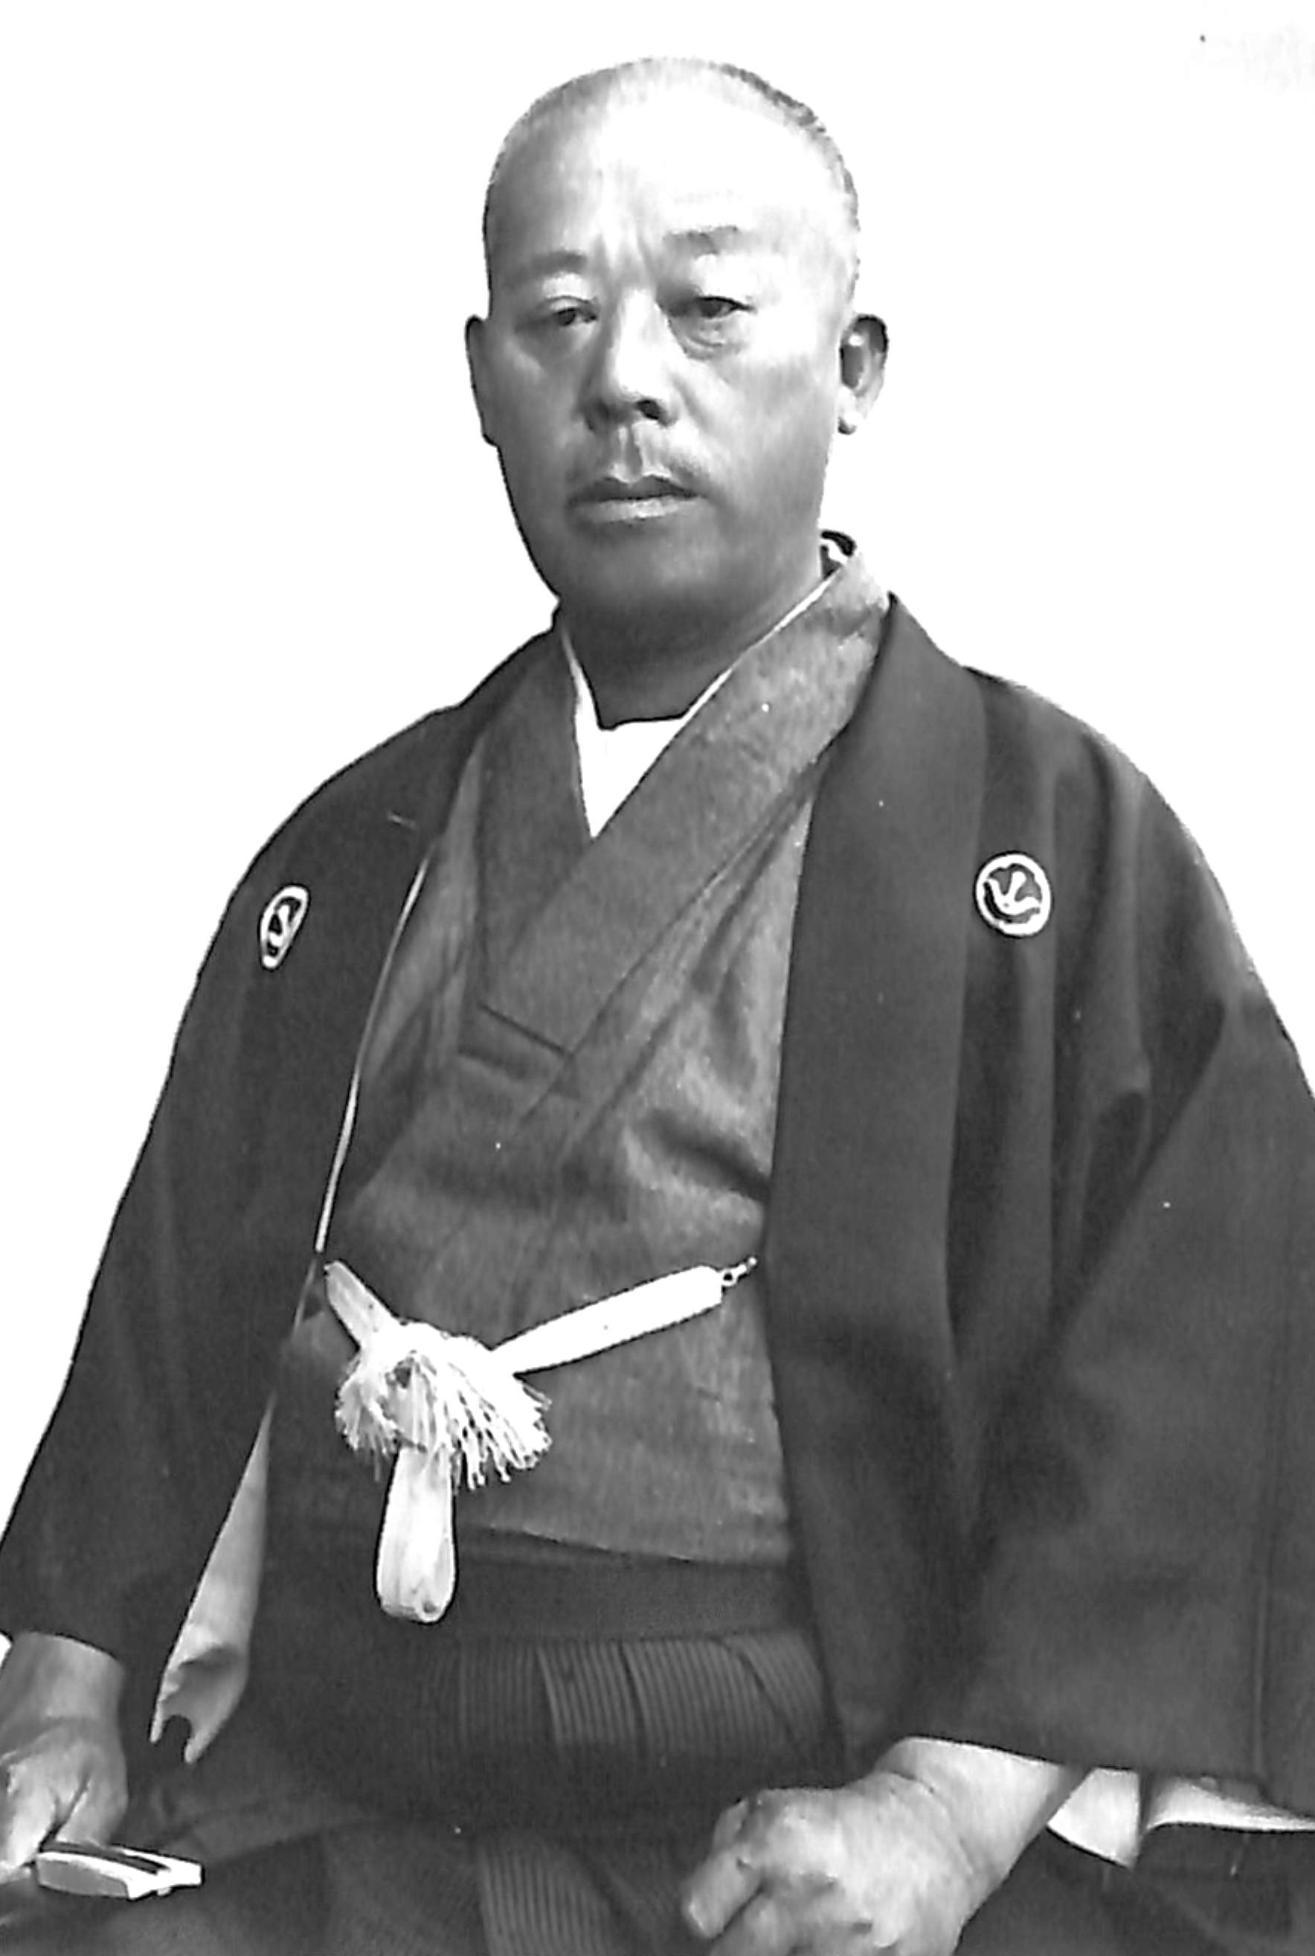 紋付き袴で右手に閉じた扇子を持ち座っている、山田勢太郎のモノクロ写真